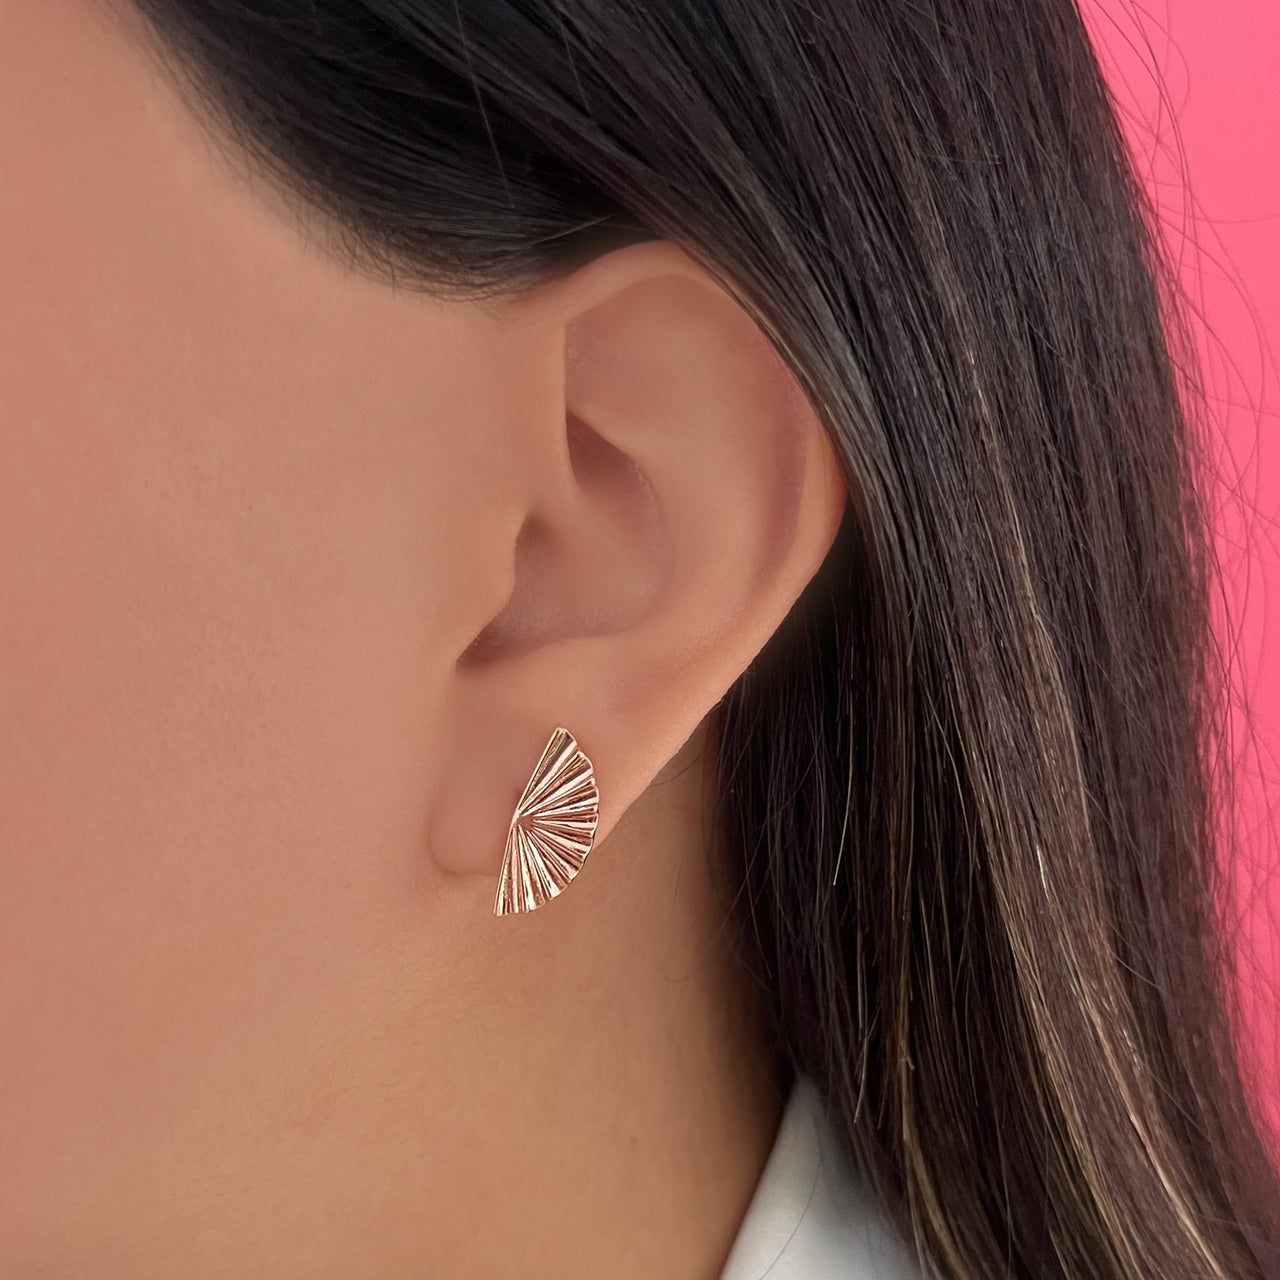 Smooth fan earring (636)